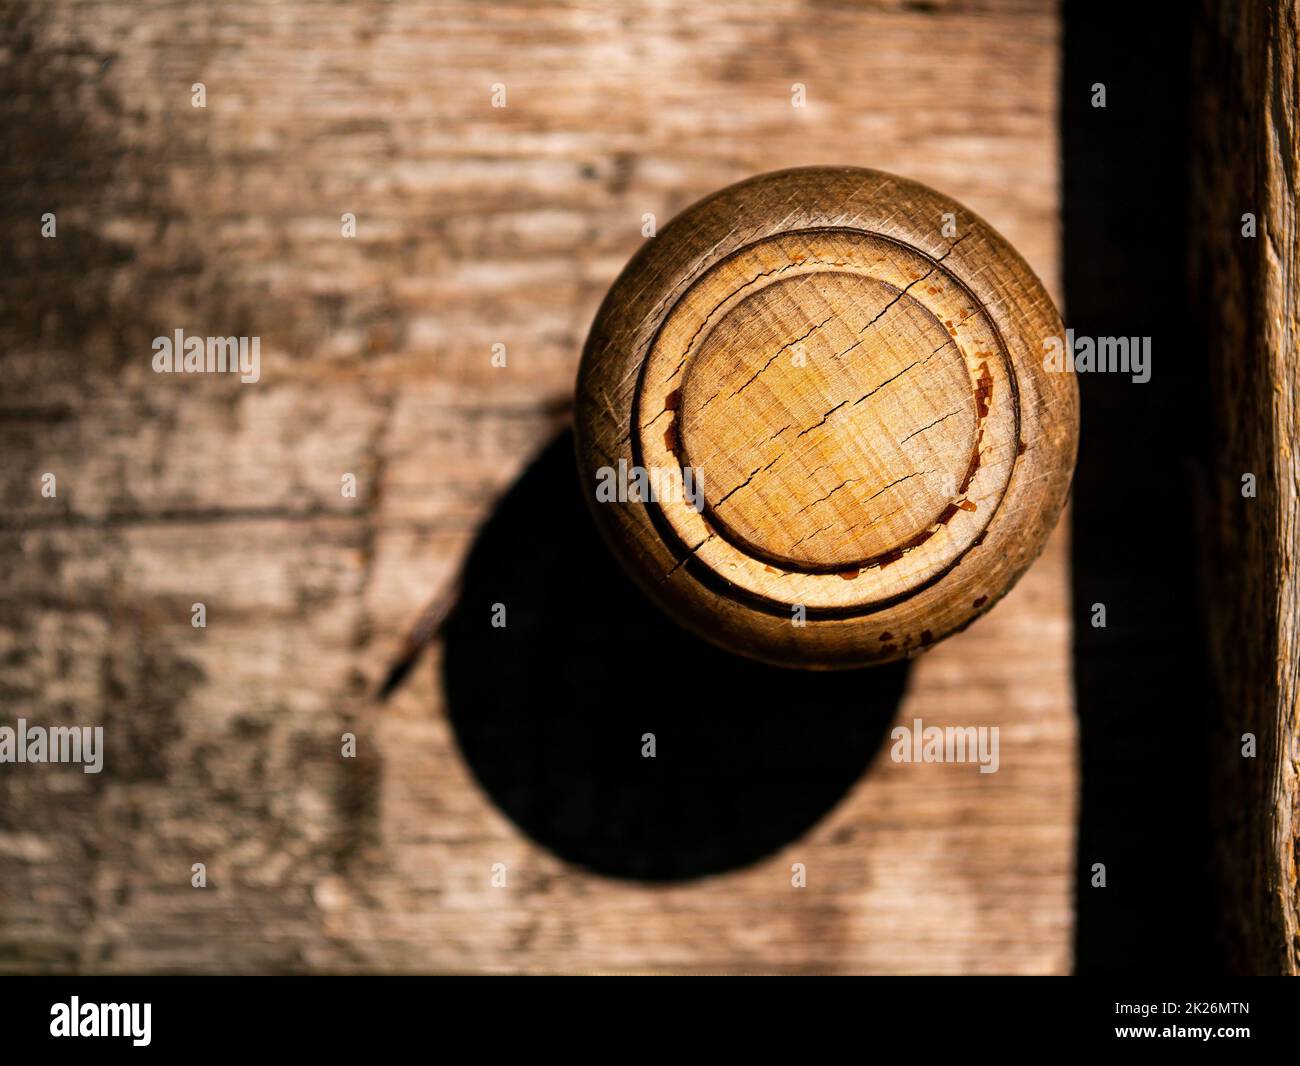 Pomo de madera redondo antiguo con sombra clara. Foto de stock